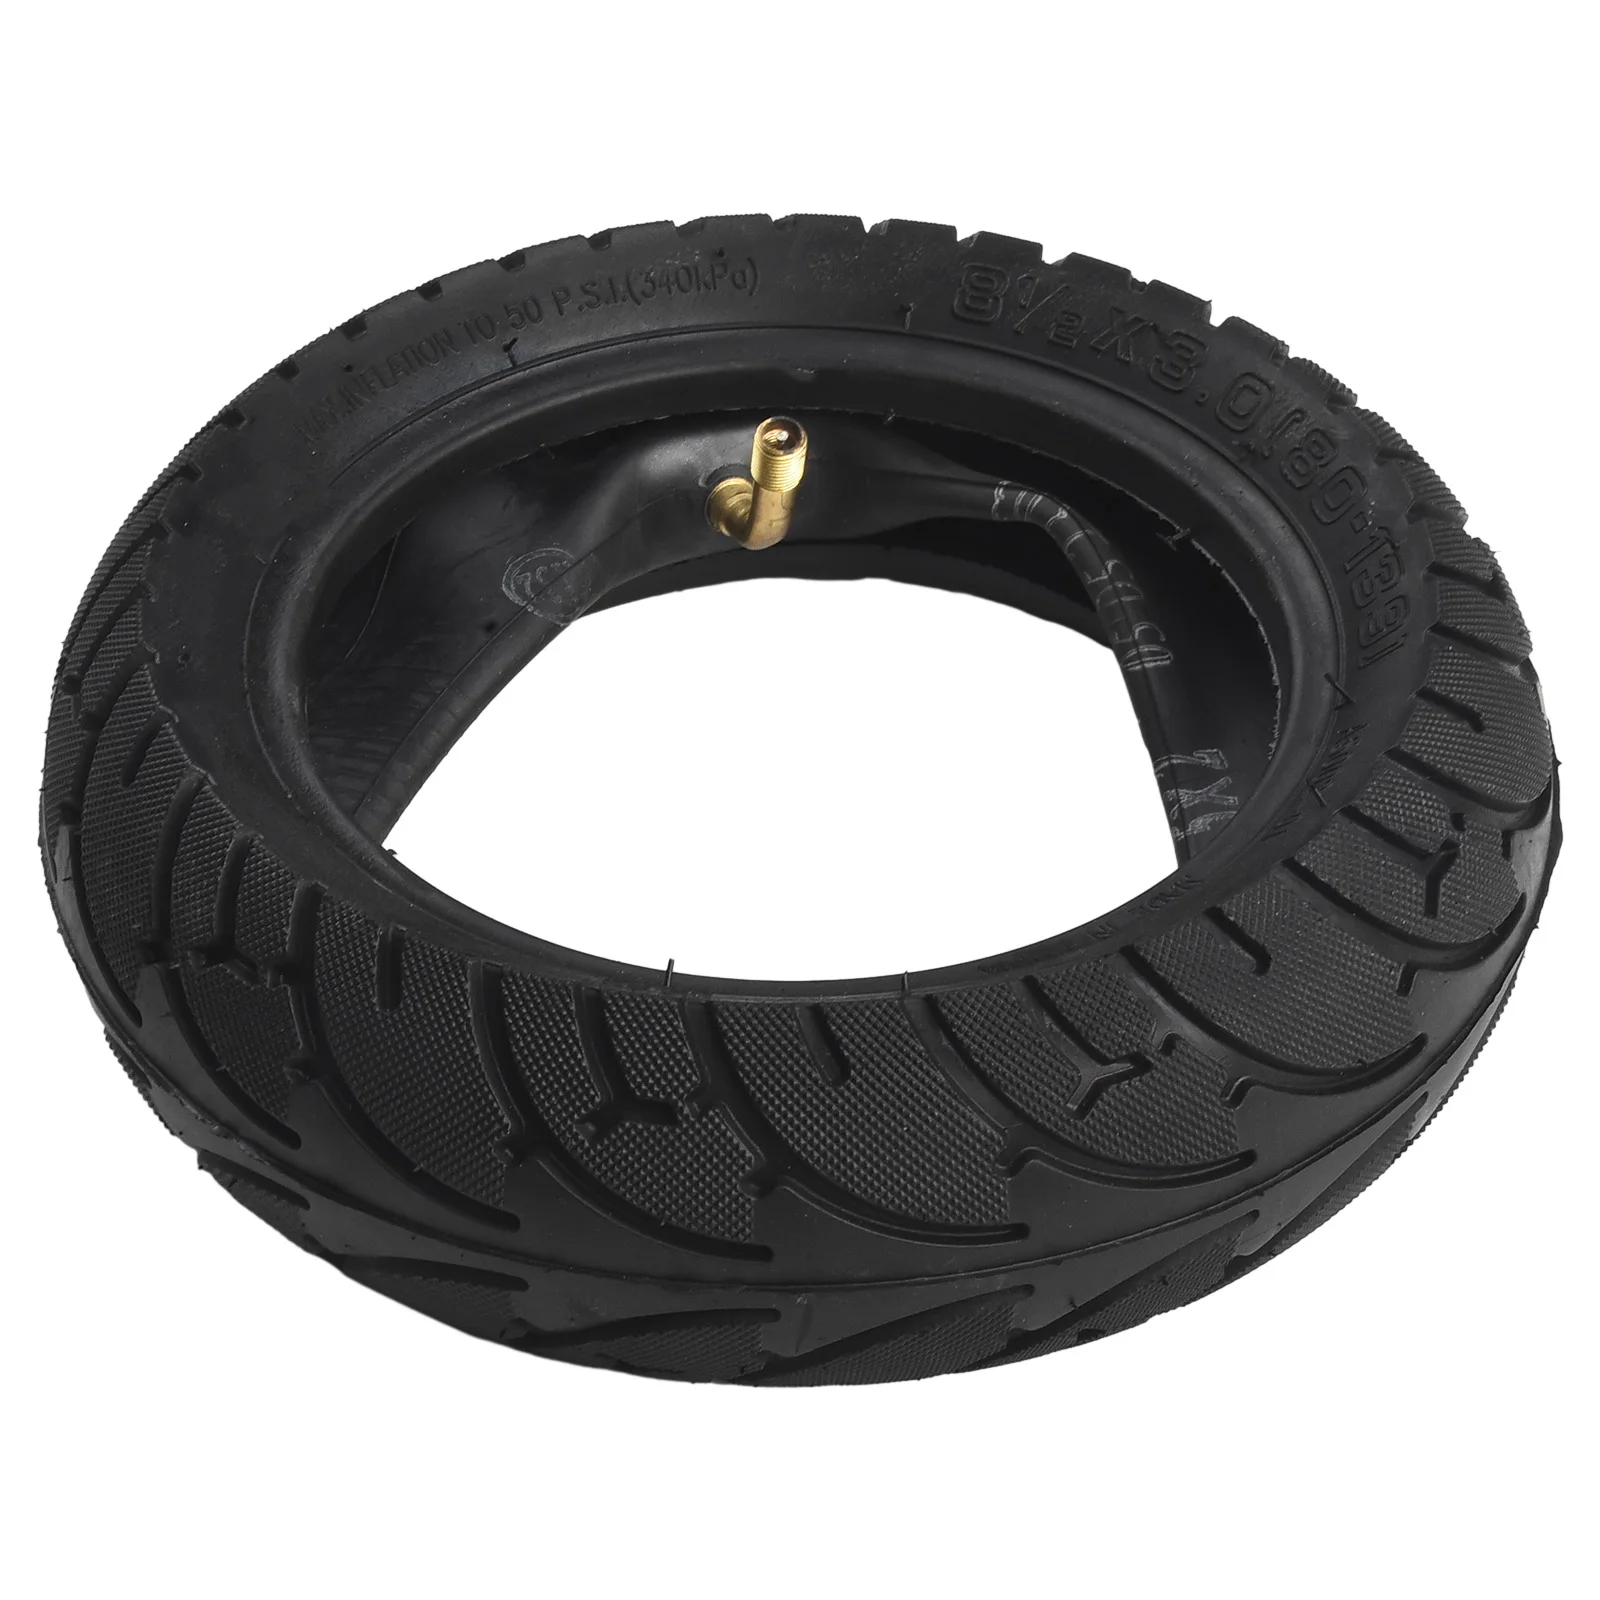 E-Scooter Outer Tire Set, substituição de pneus Wearproof, Scooter Elétrica Acessórios, 8 1/2x3.0, 80-139, Brand New